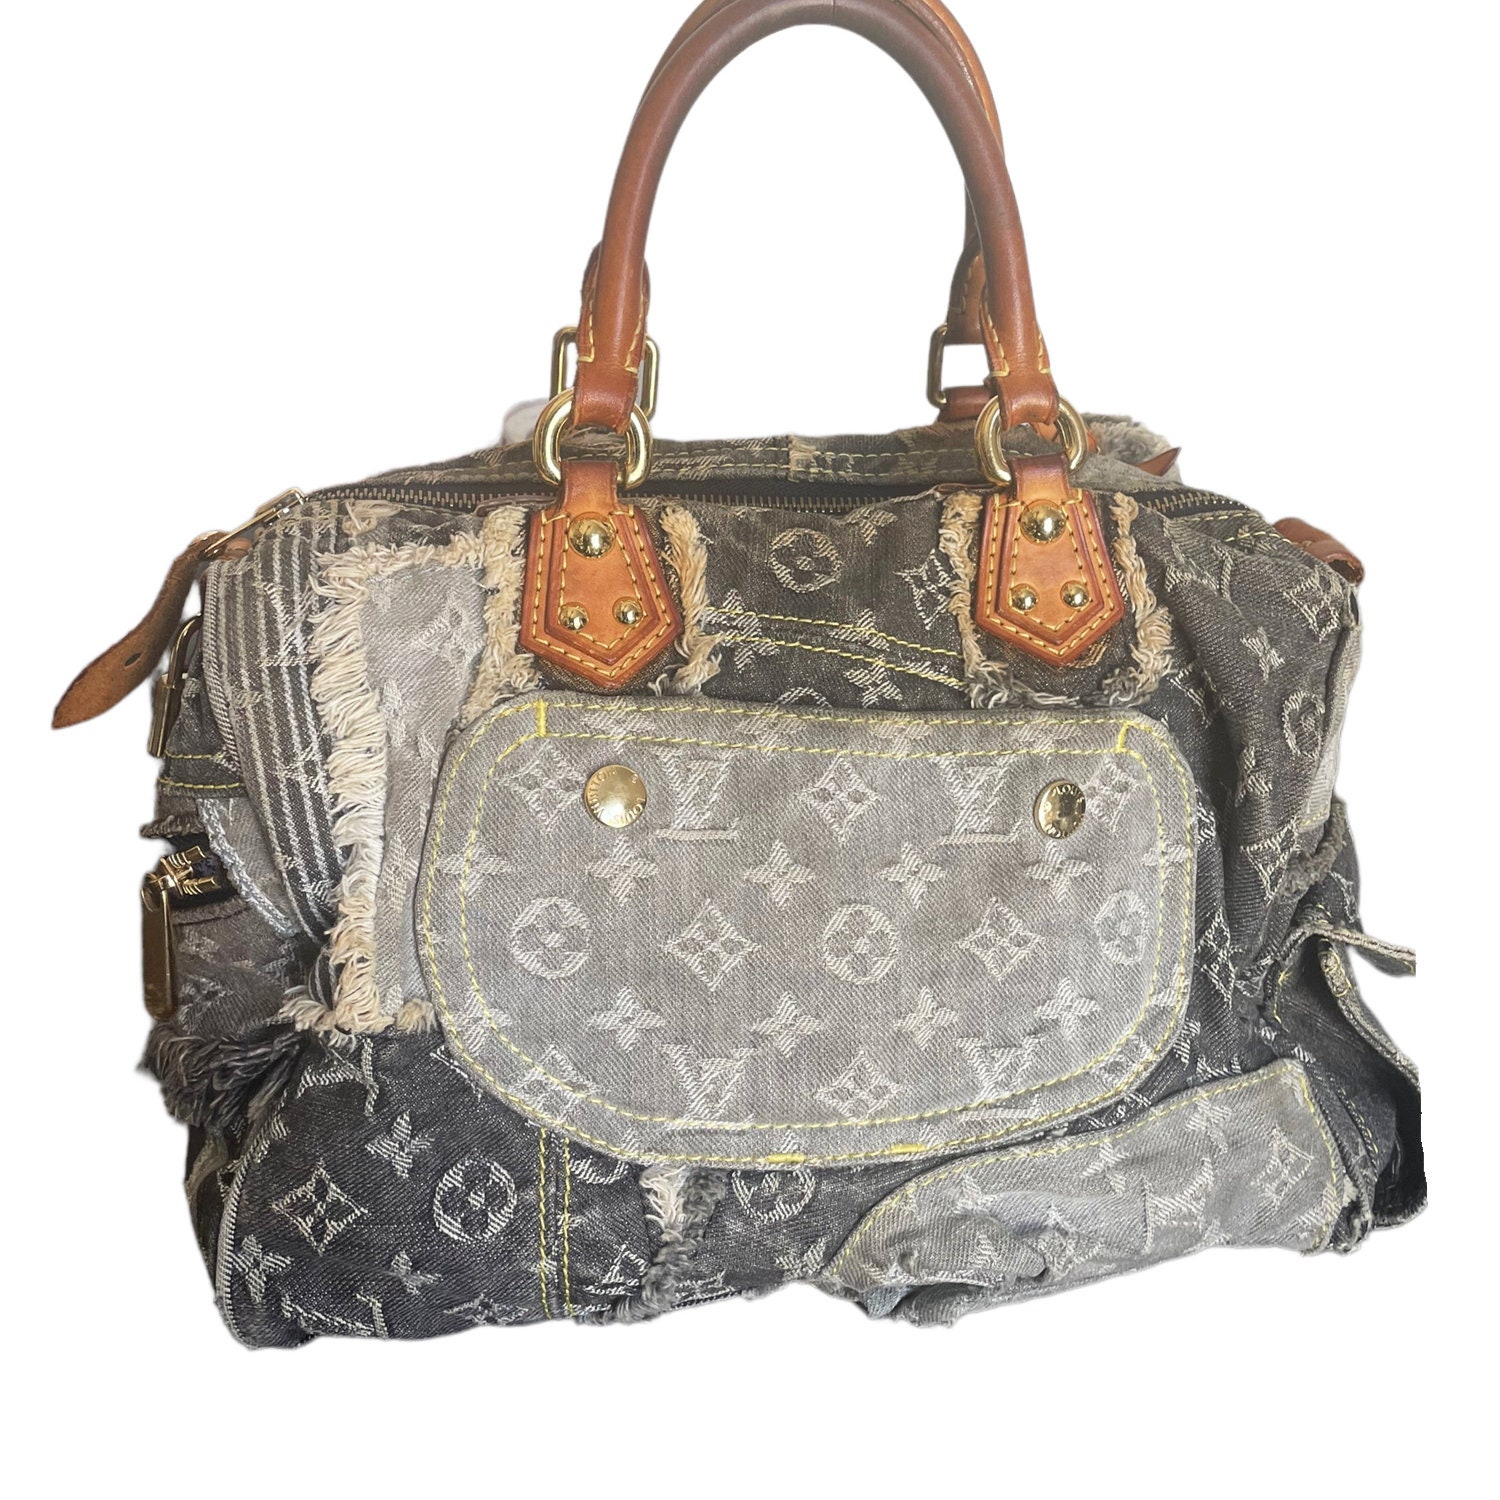 Louis Vuitton Patchwork Speedy Bag Denim 30 Blue 14013361